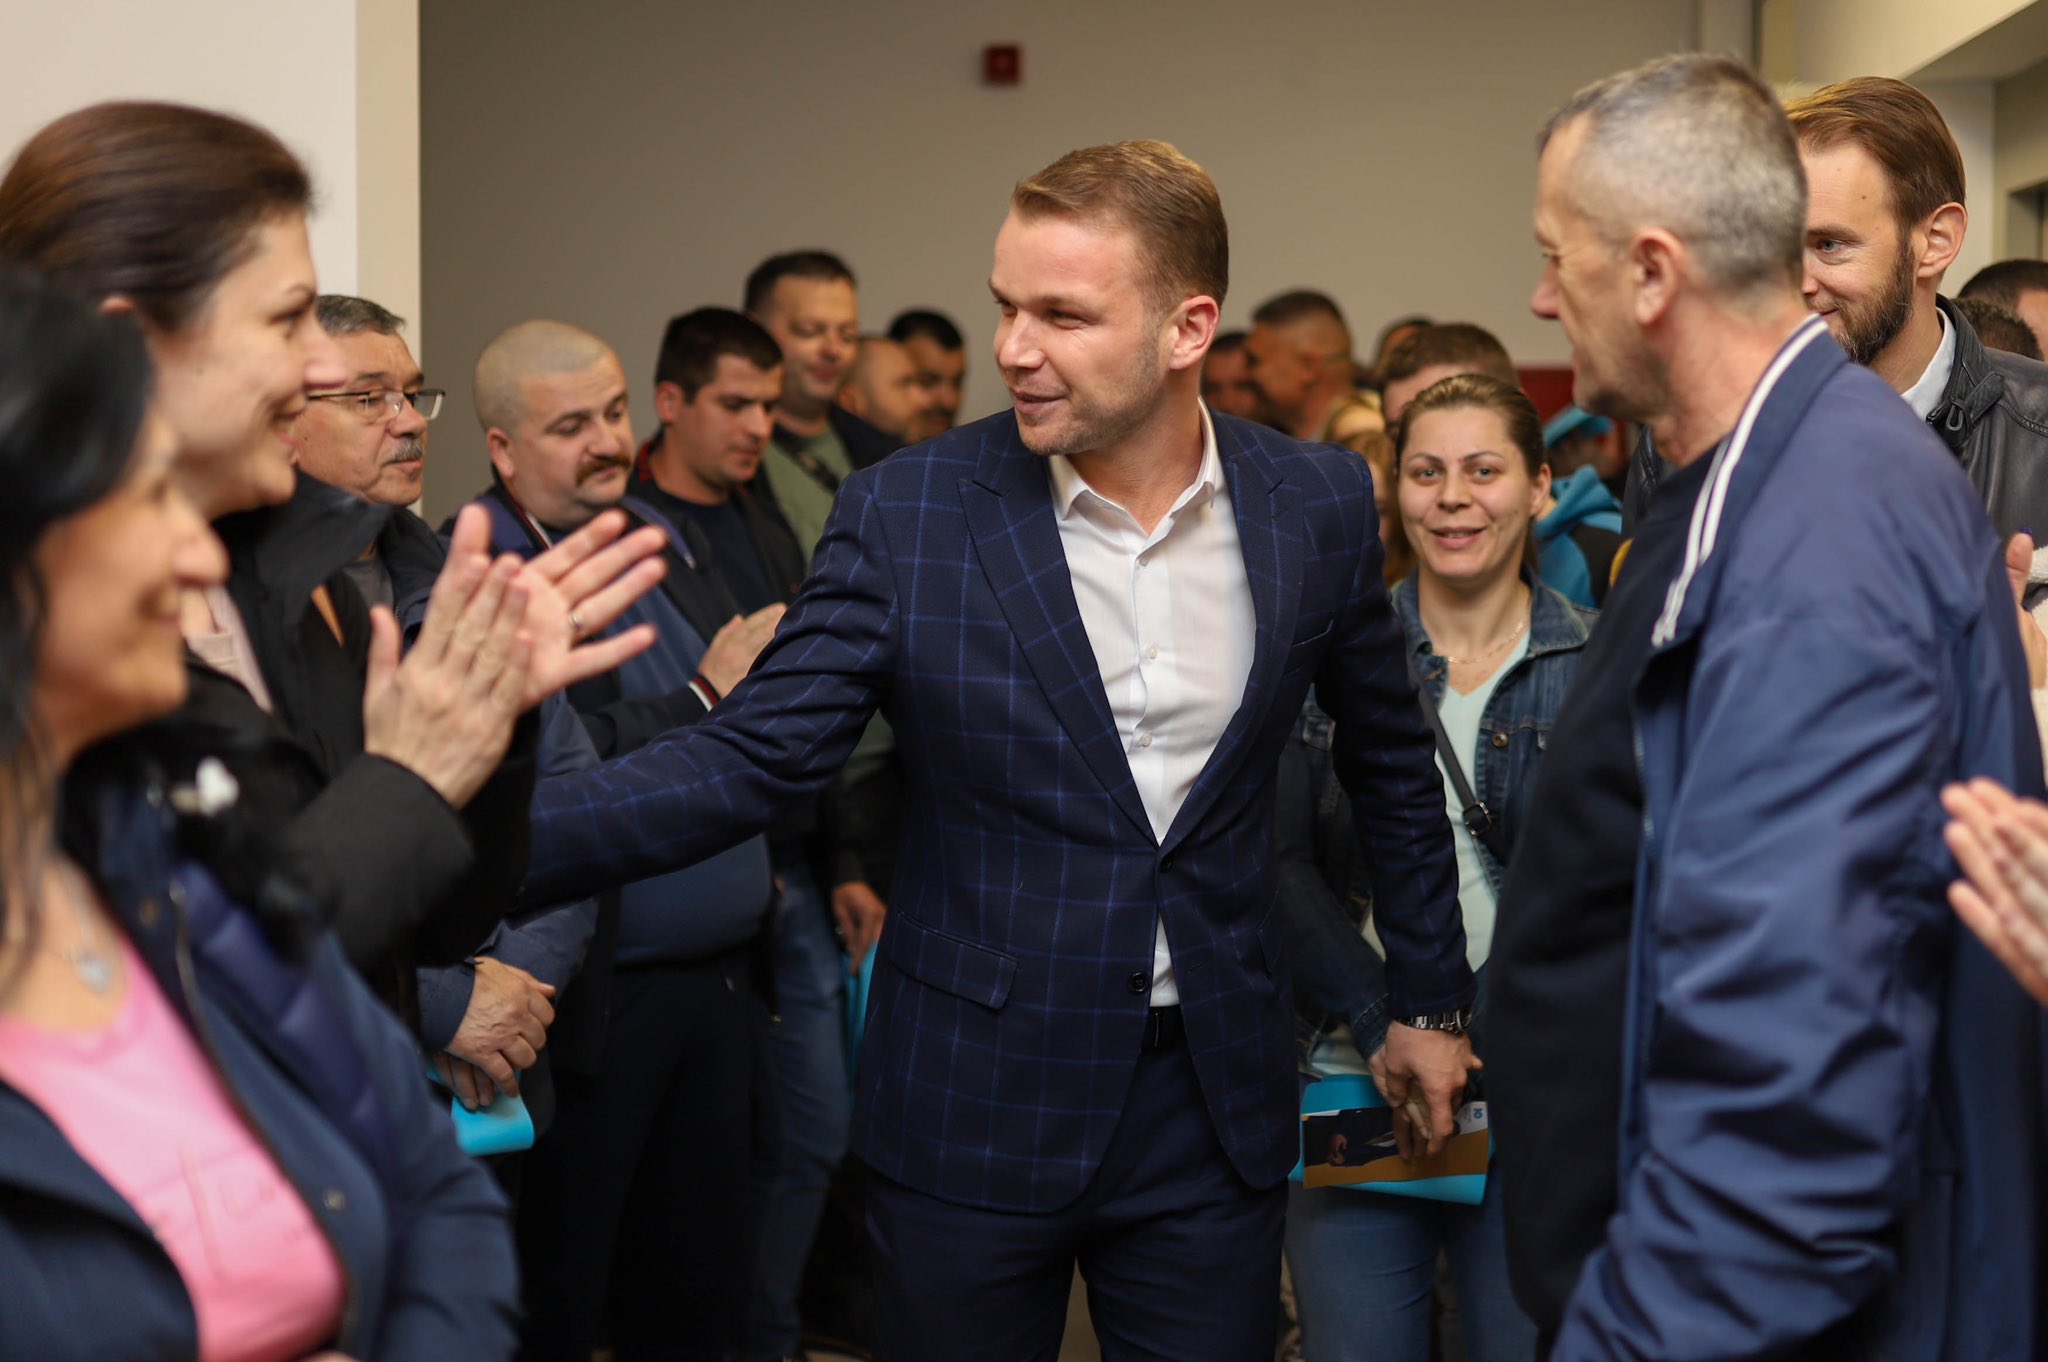 “Lauš je večeras pokazao svoju snagu i opredjeljenje” Stanivukoviću jednoglasna podrška i u ovoj MZ (FOTO)